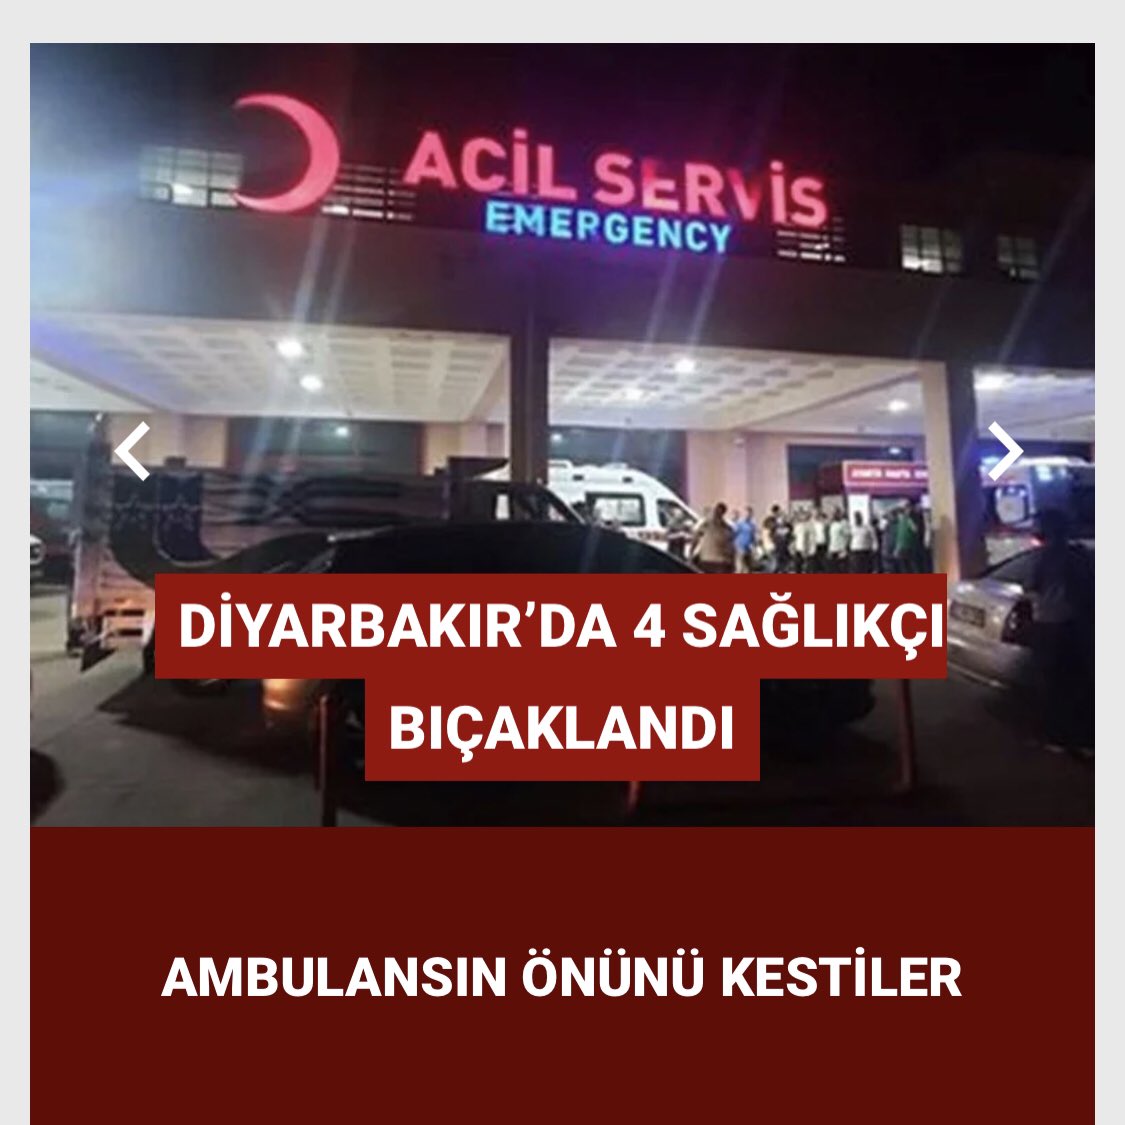 Şaka gibi! Diyarbakır’da yol verme tartışması nedeniyle birkaç şehir eşkiyası ambulansın önünü kesti, önce şoför arkadaşımıza sonrasında ise duruma müdahale eden sağlık çalışanlarına bıçakla saldırdı! Kendilerini Diyarbakır il örgütümüz aracılığıyla aradık. Sendikamızın hukuken…